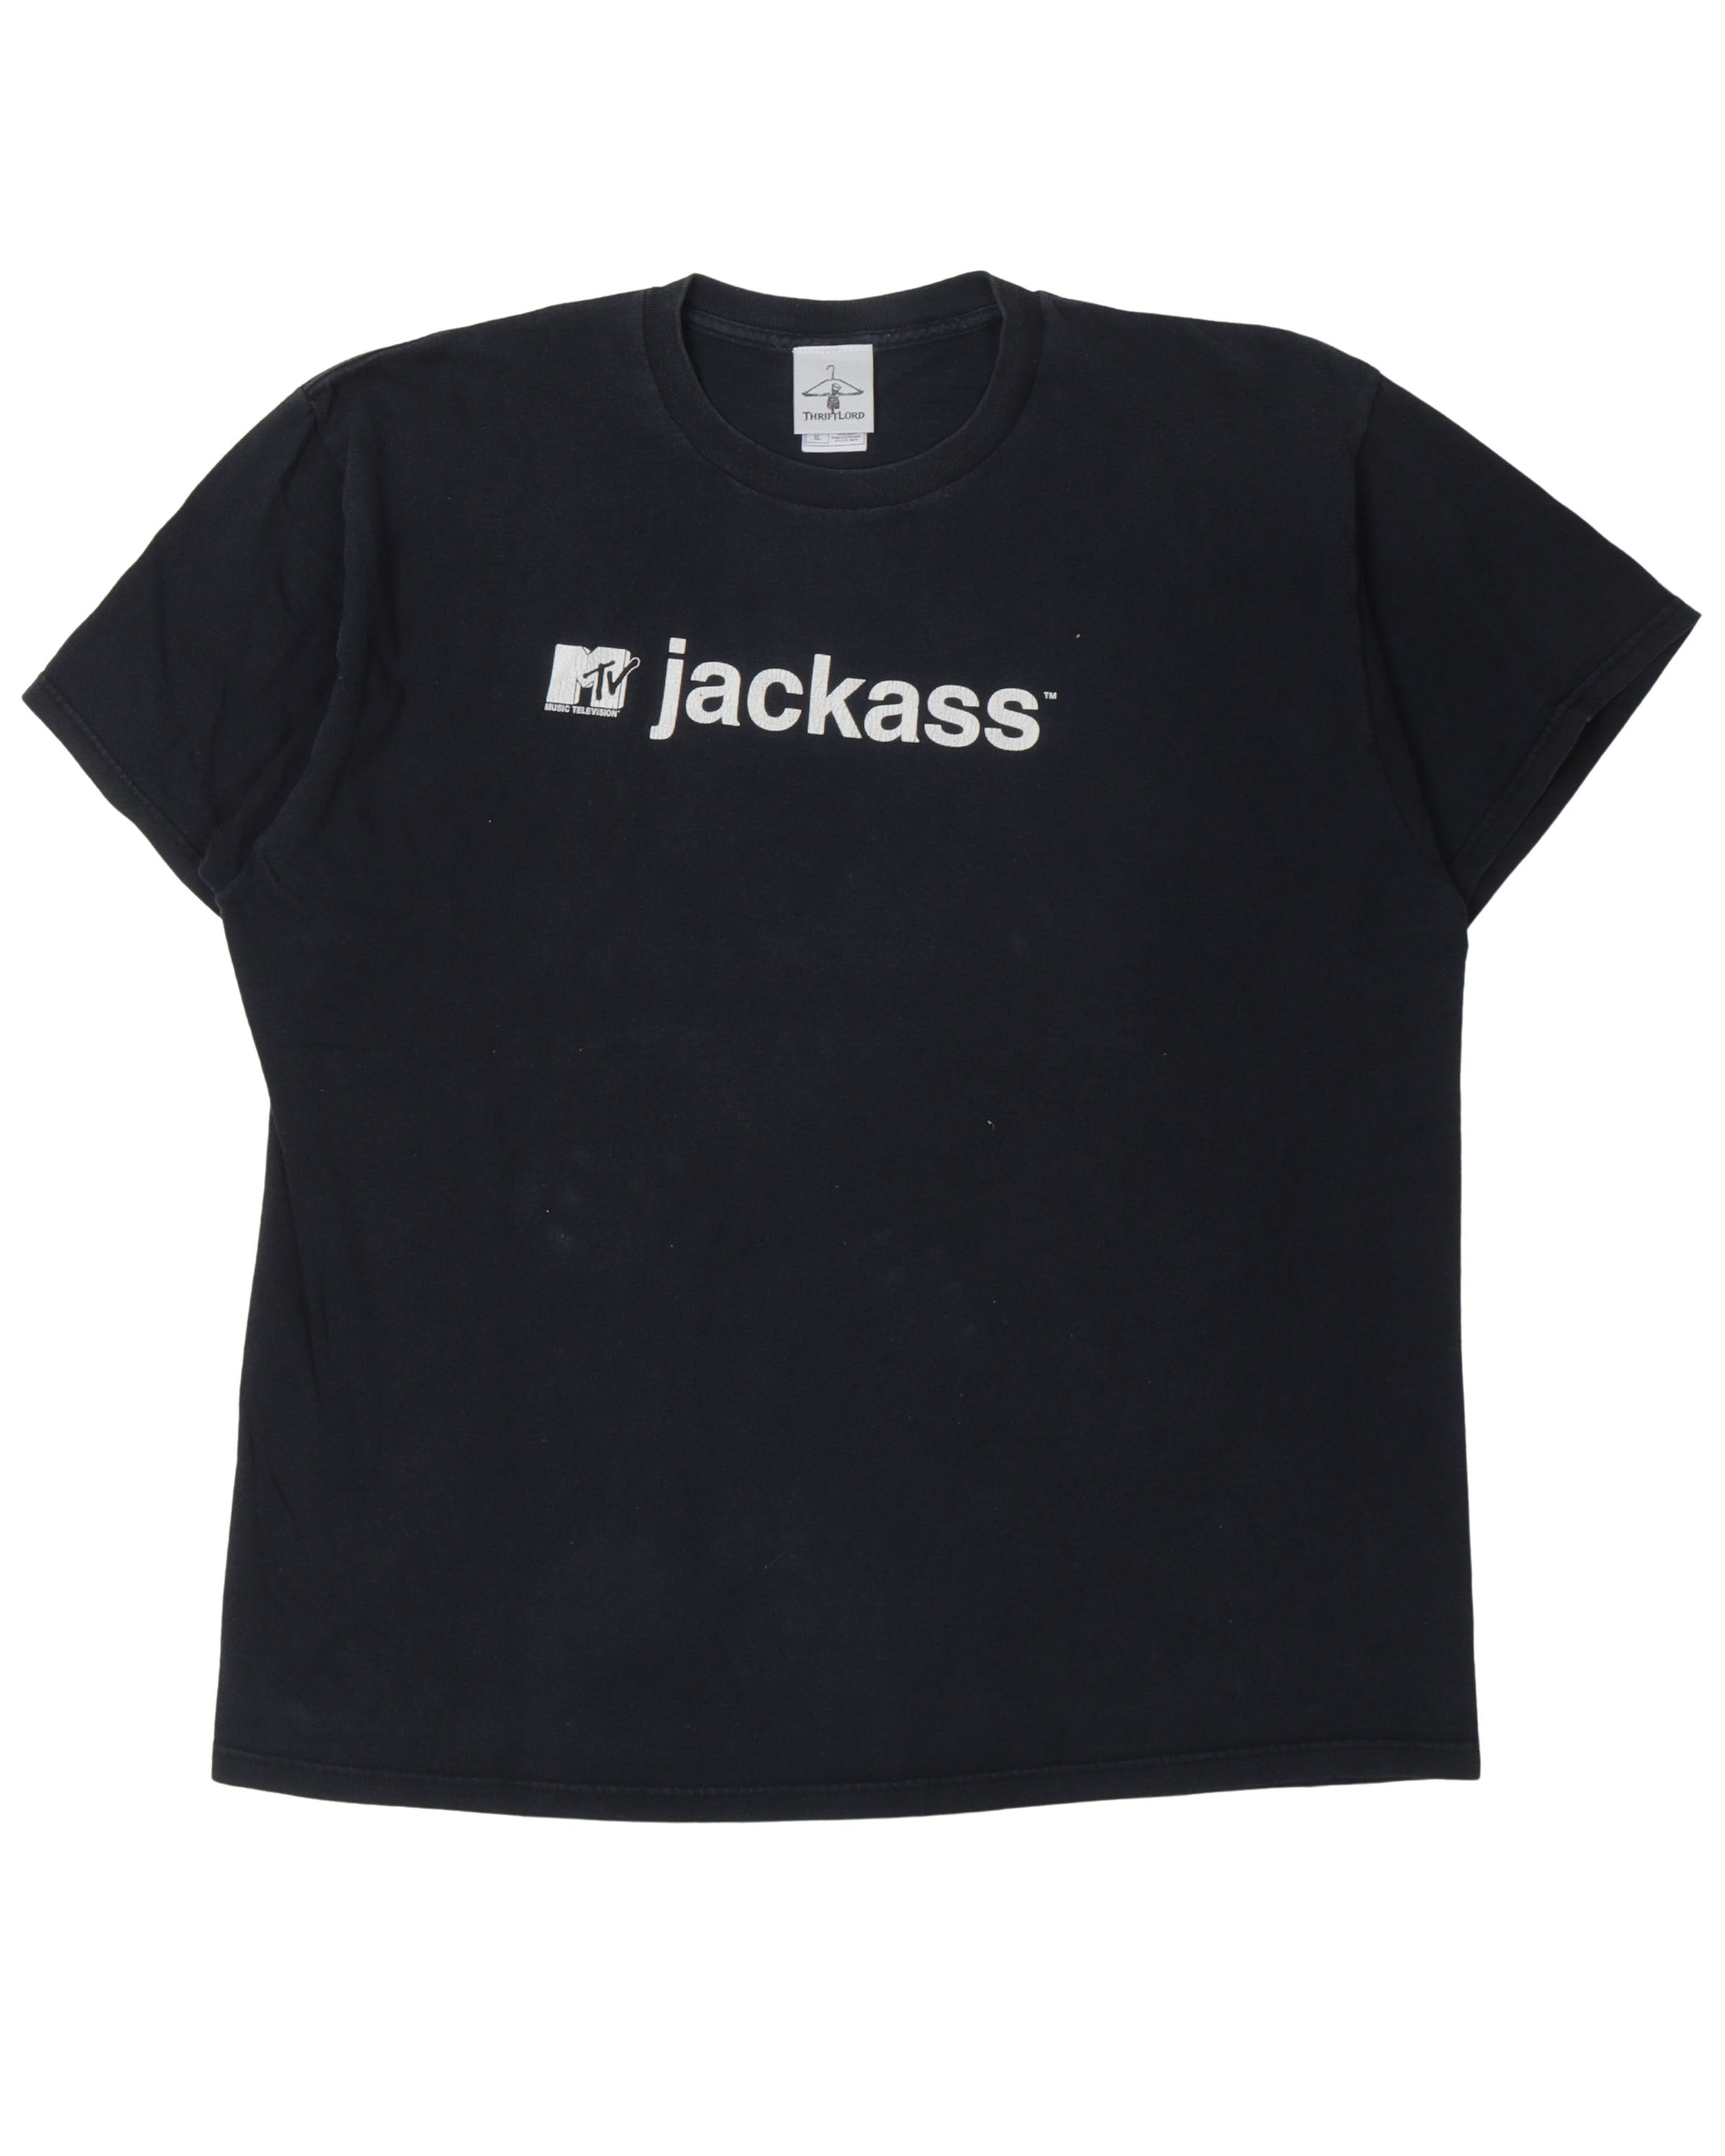 MTV Jackass T-Shirt